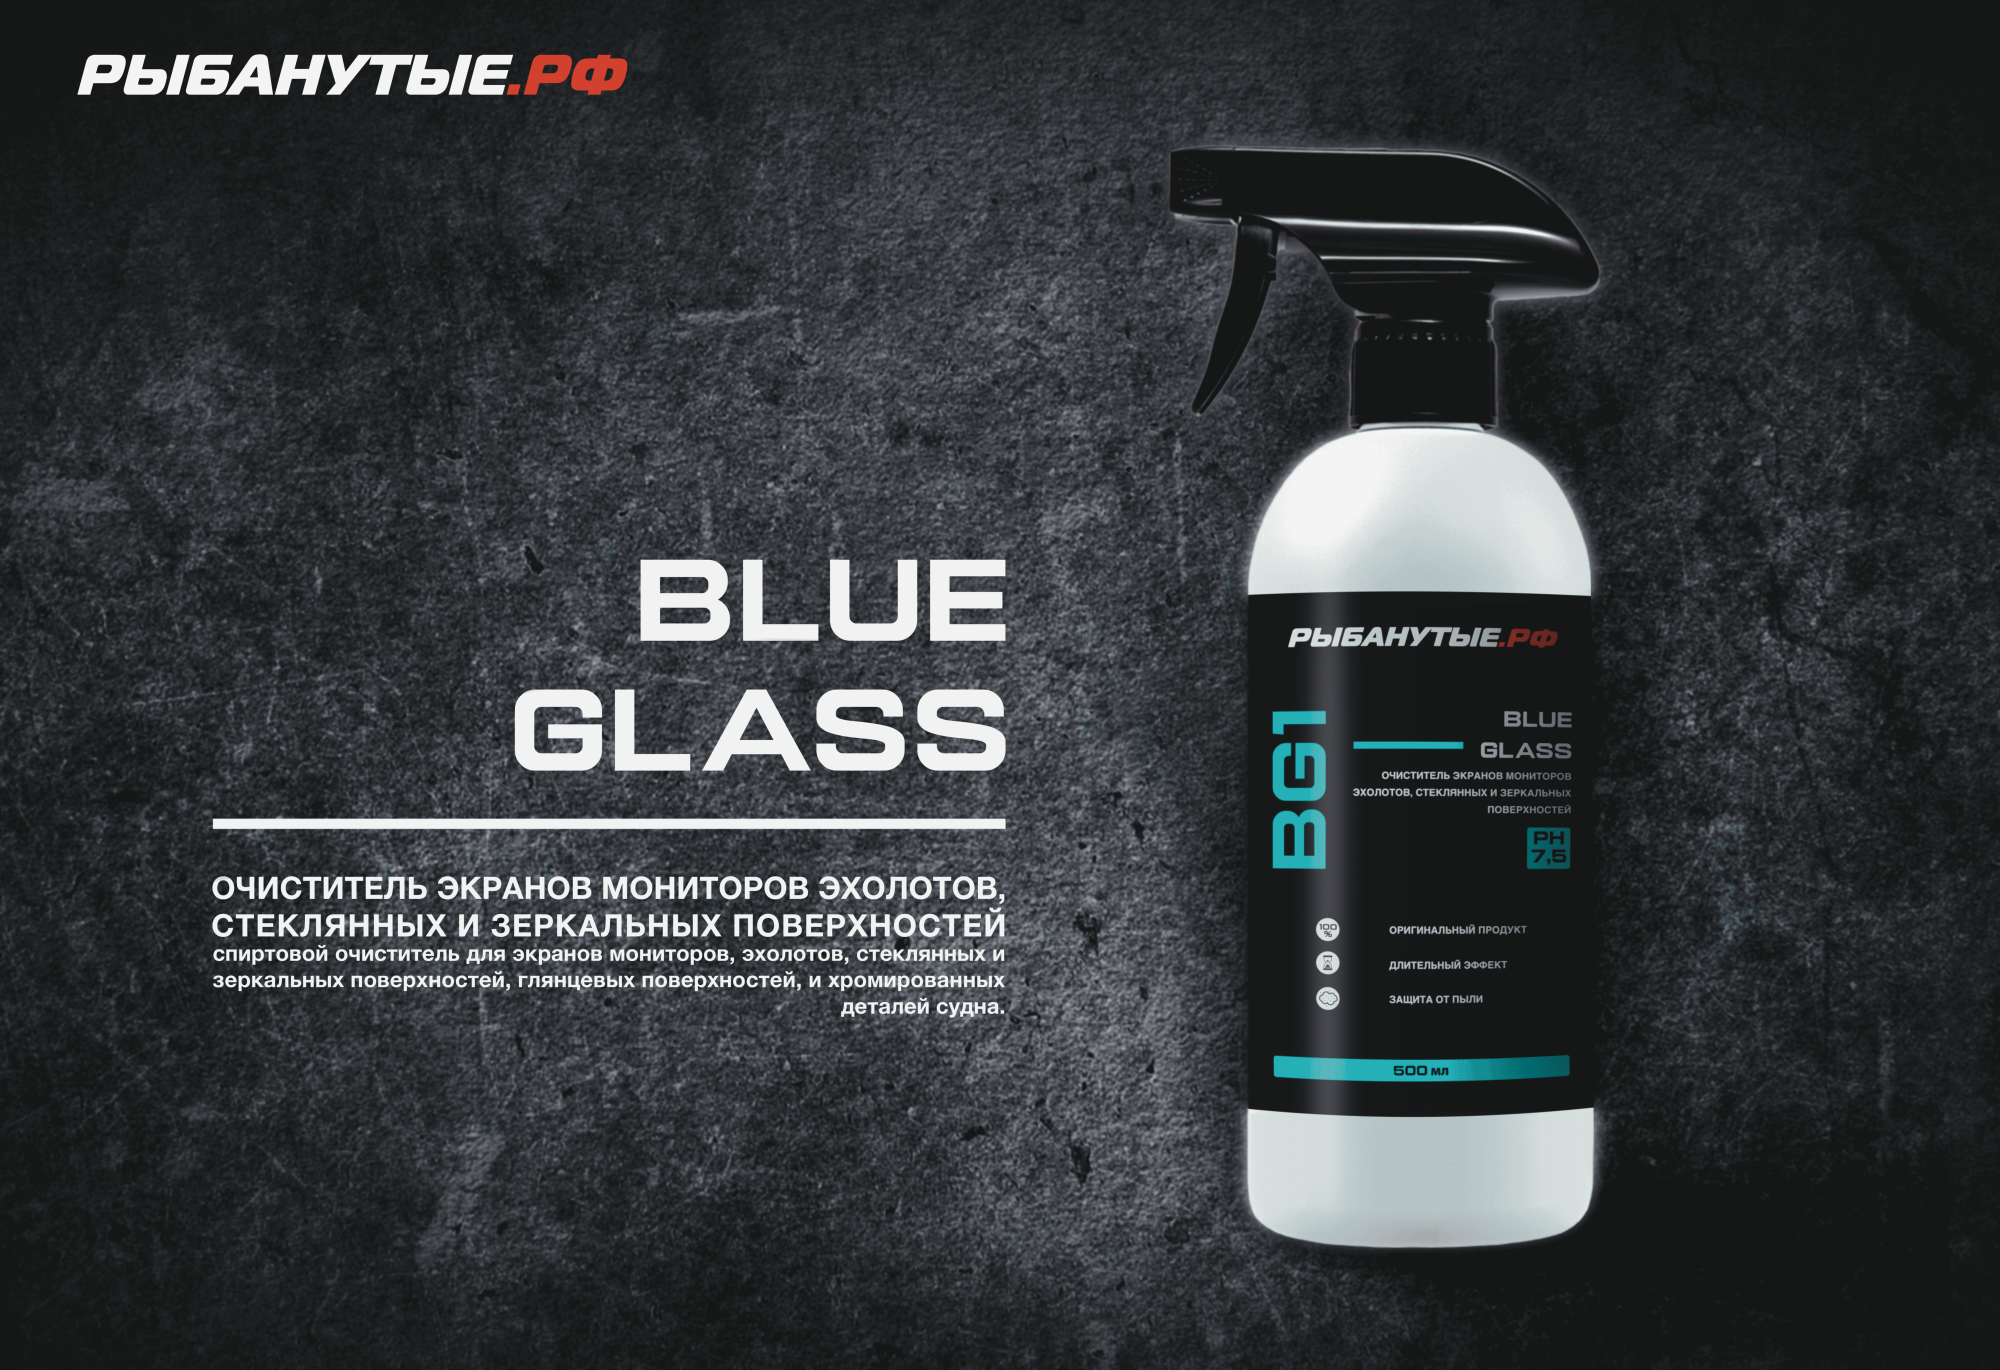 РЫБАНУТЫЕ.РФ BLUE GLASS (BG1) Очиститель экранов мониторов, эхолотов, стеклянных и зеркальных поверхностей 500 мл.